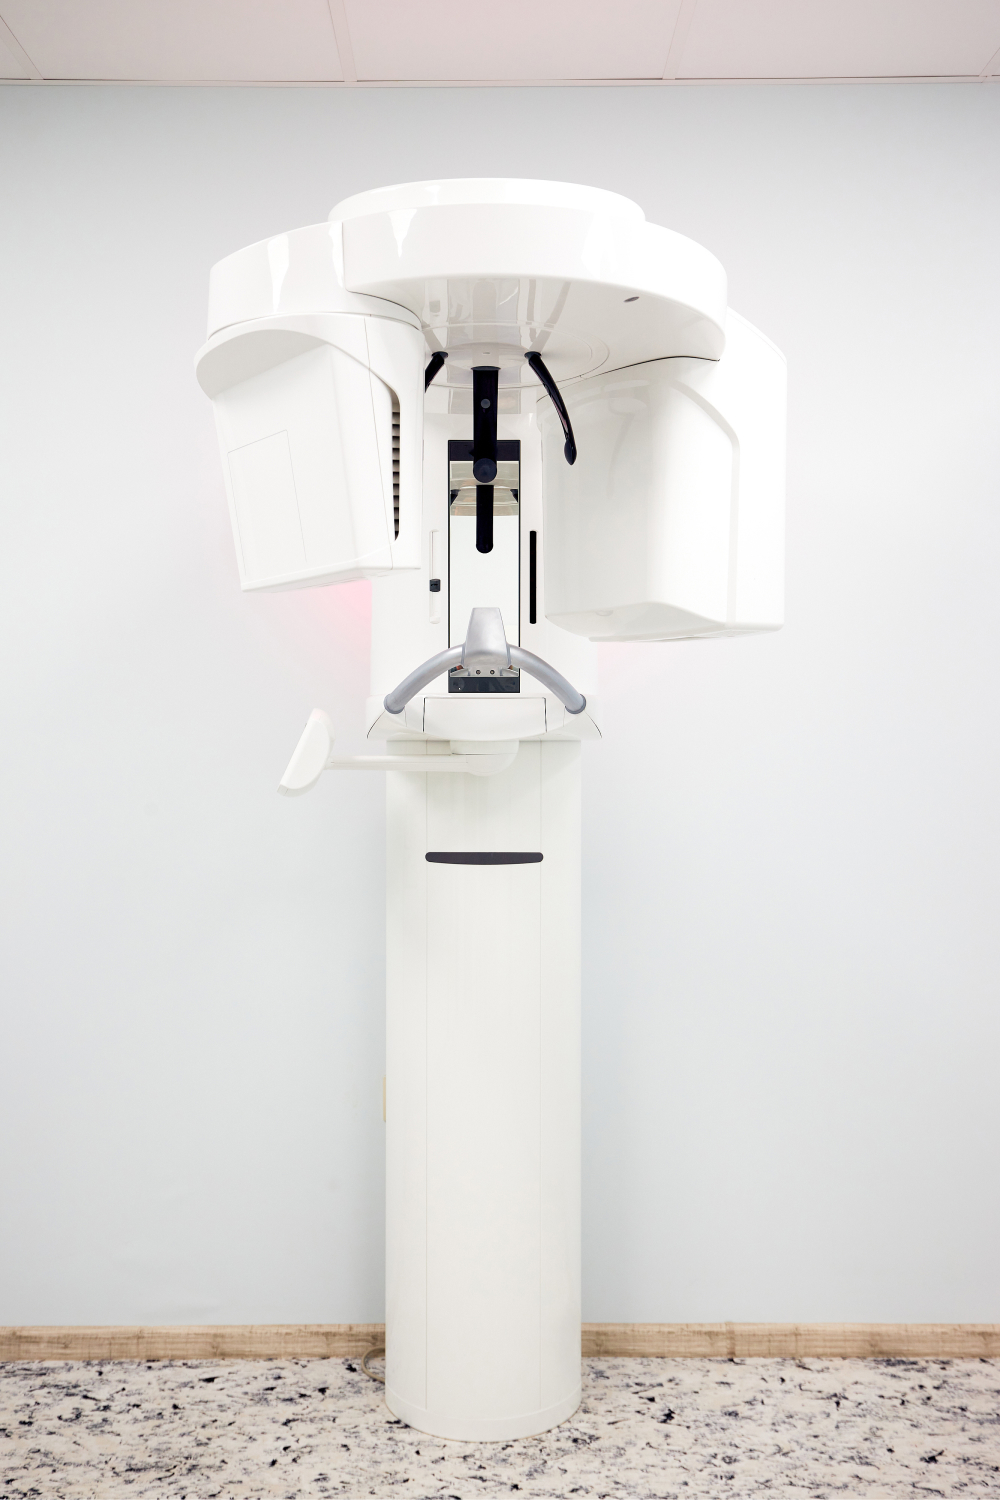 Cone Beam CT Imaging in 